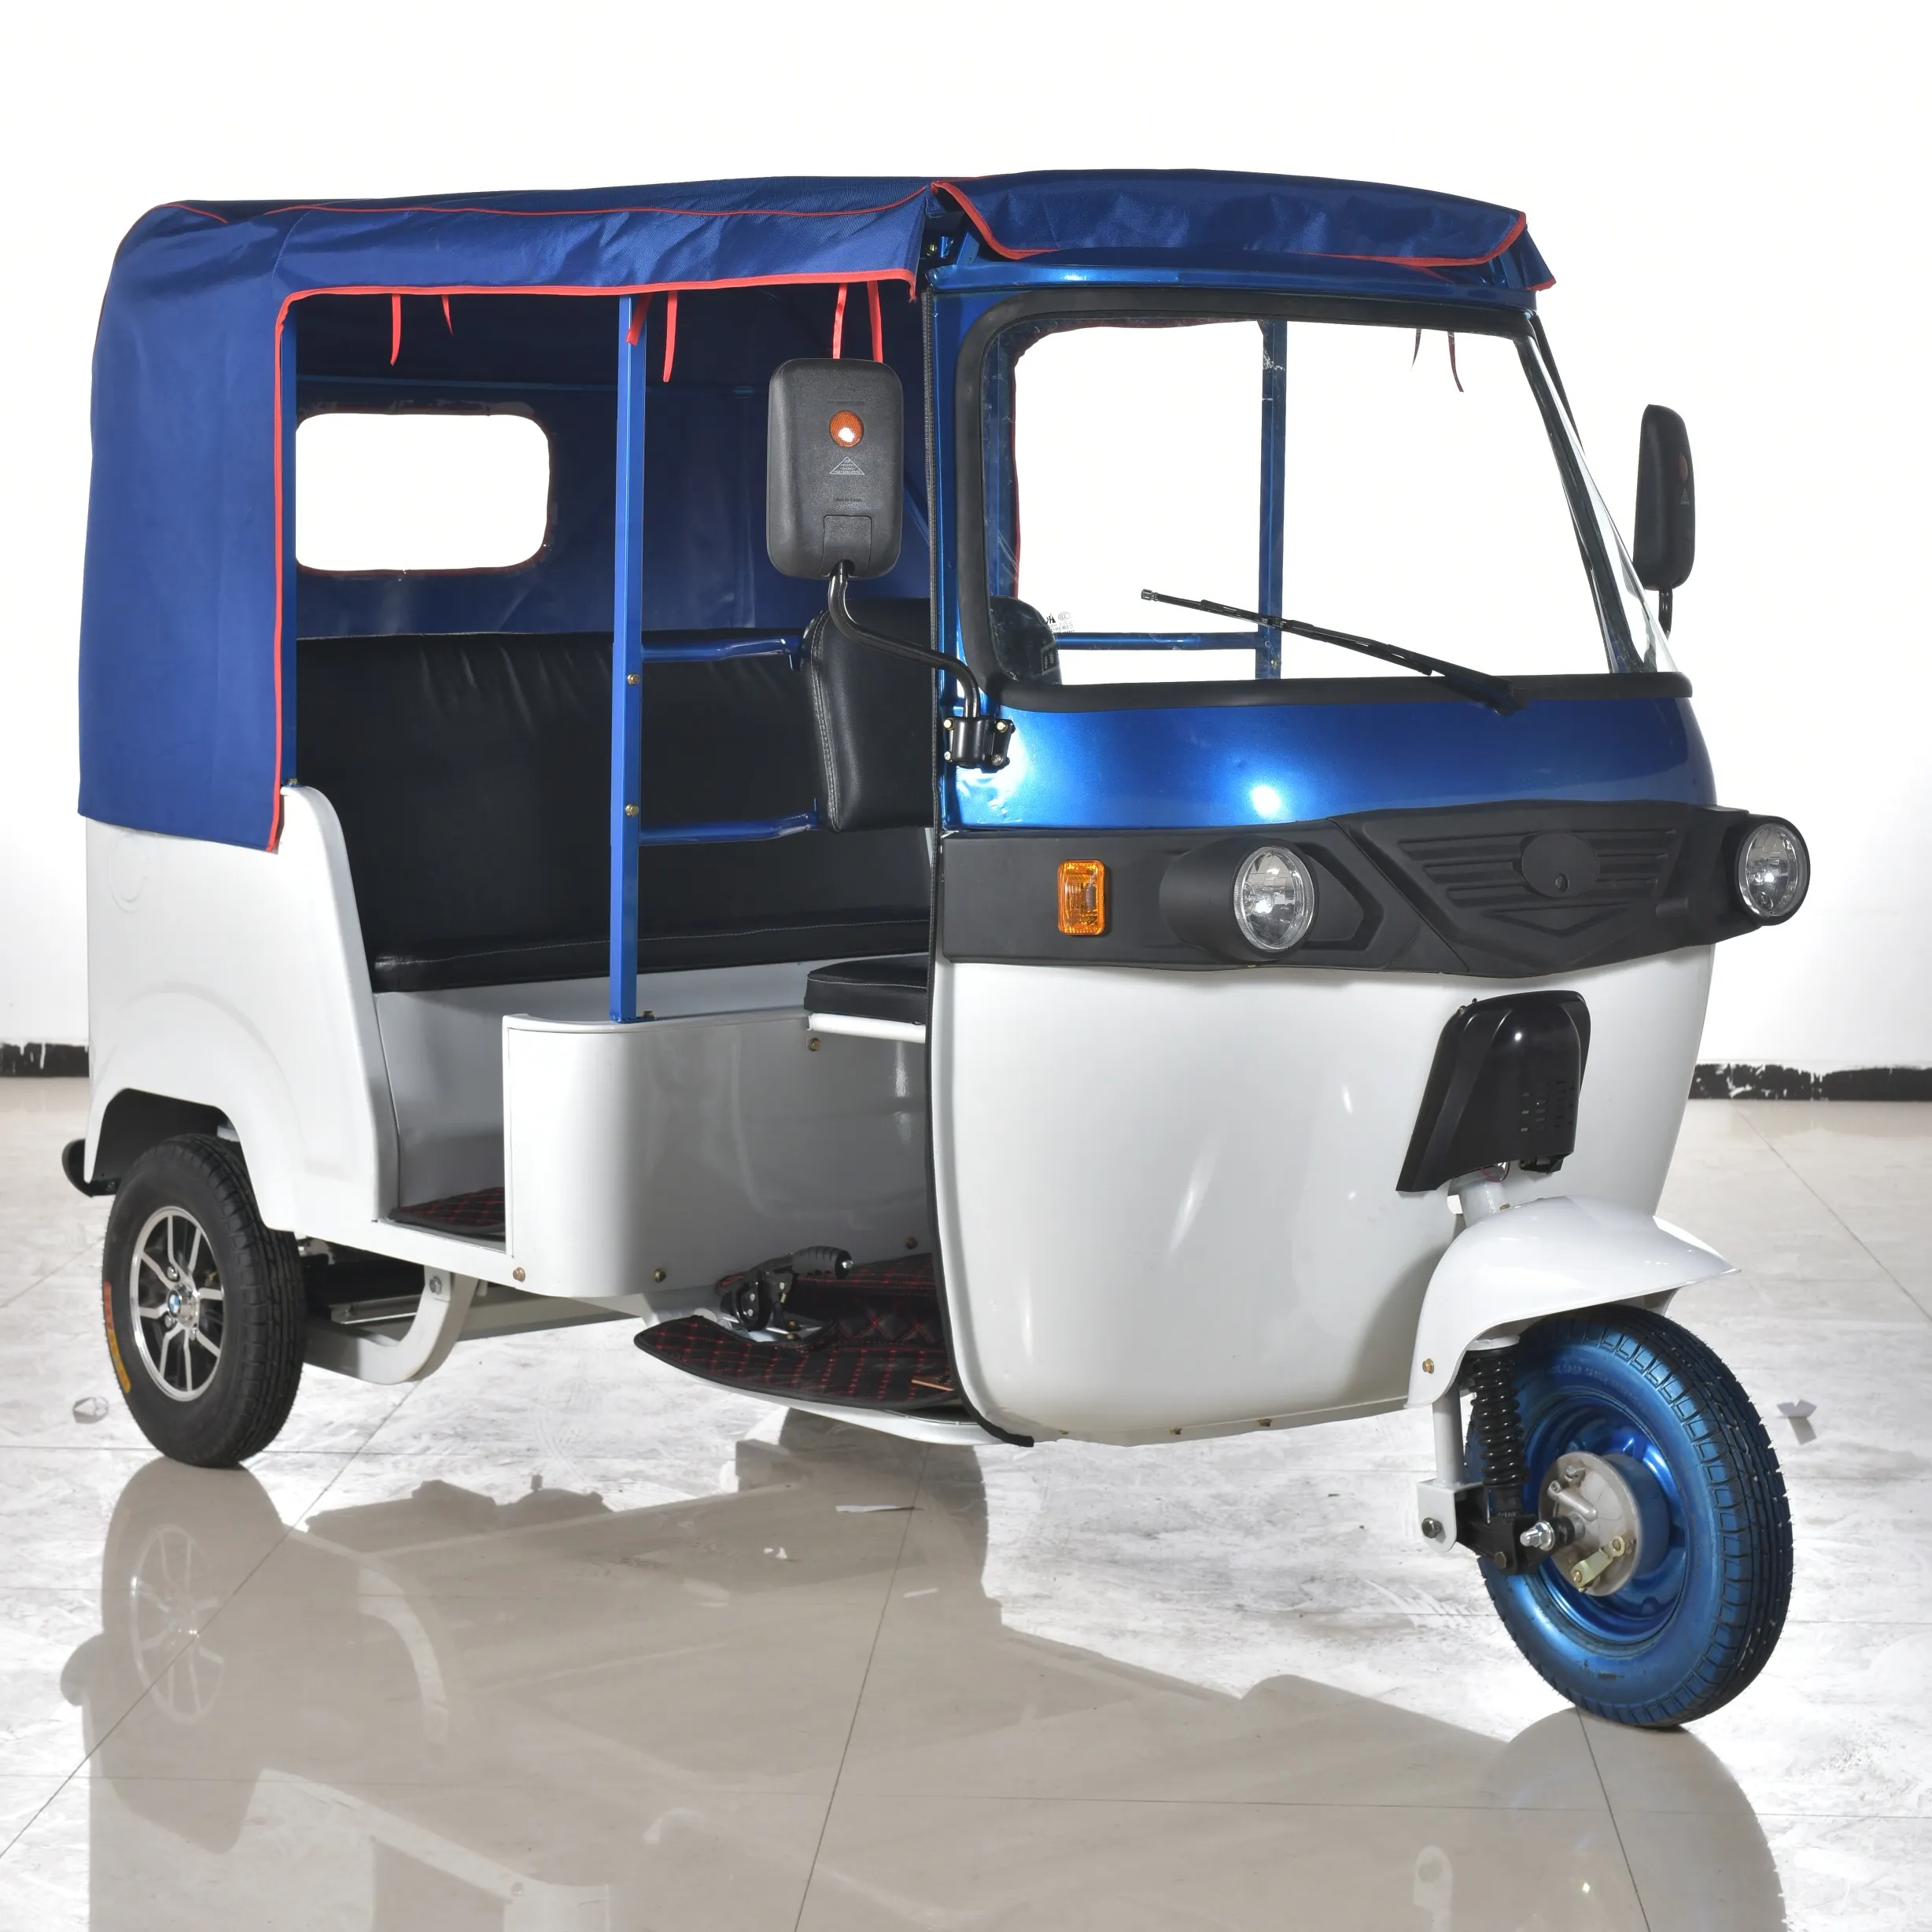 Rickshaw ecológico, batería de litio de tres ruedas, mejor calidad